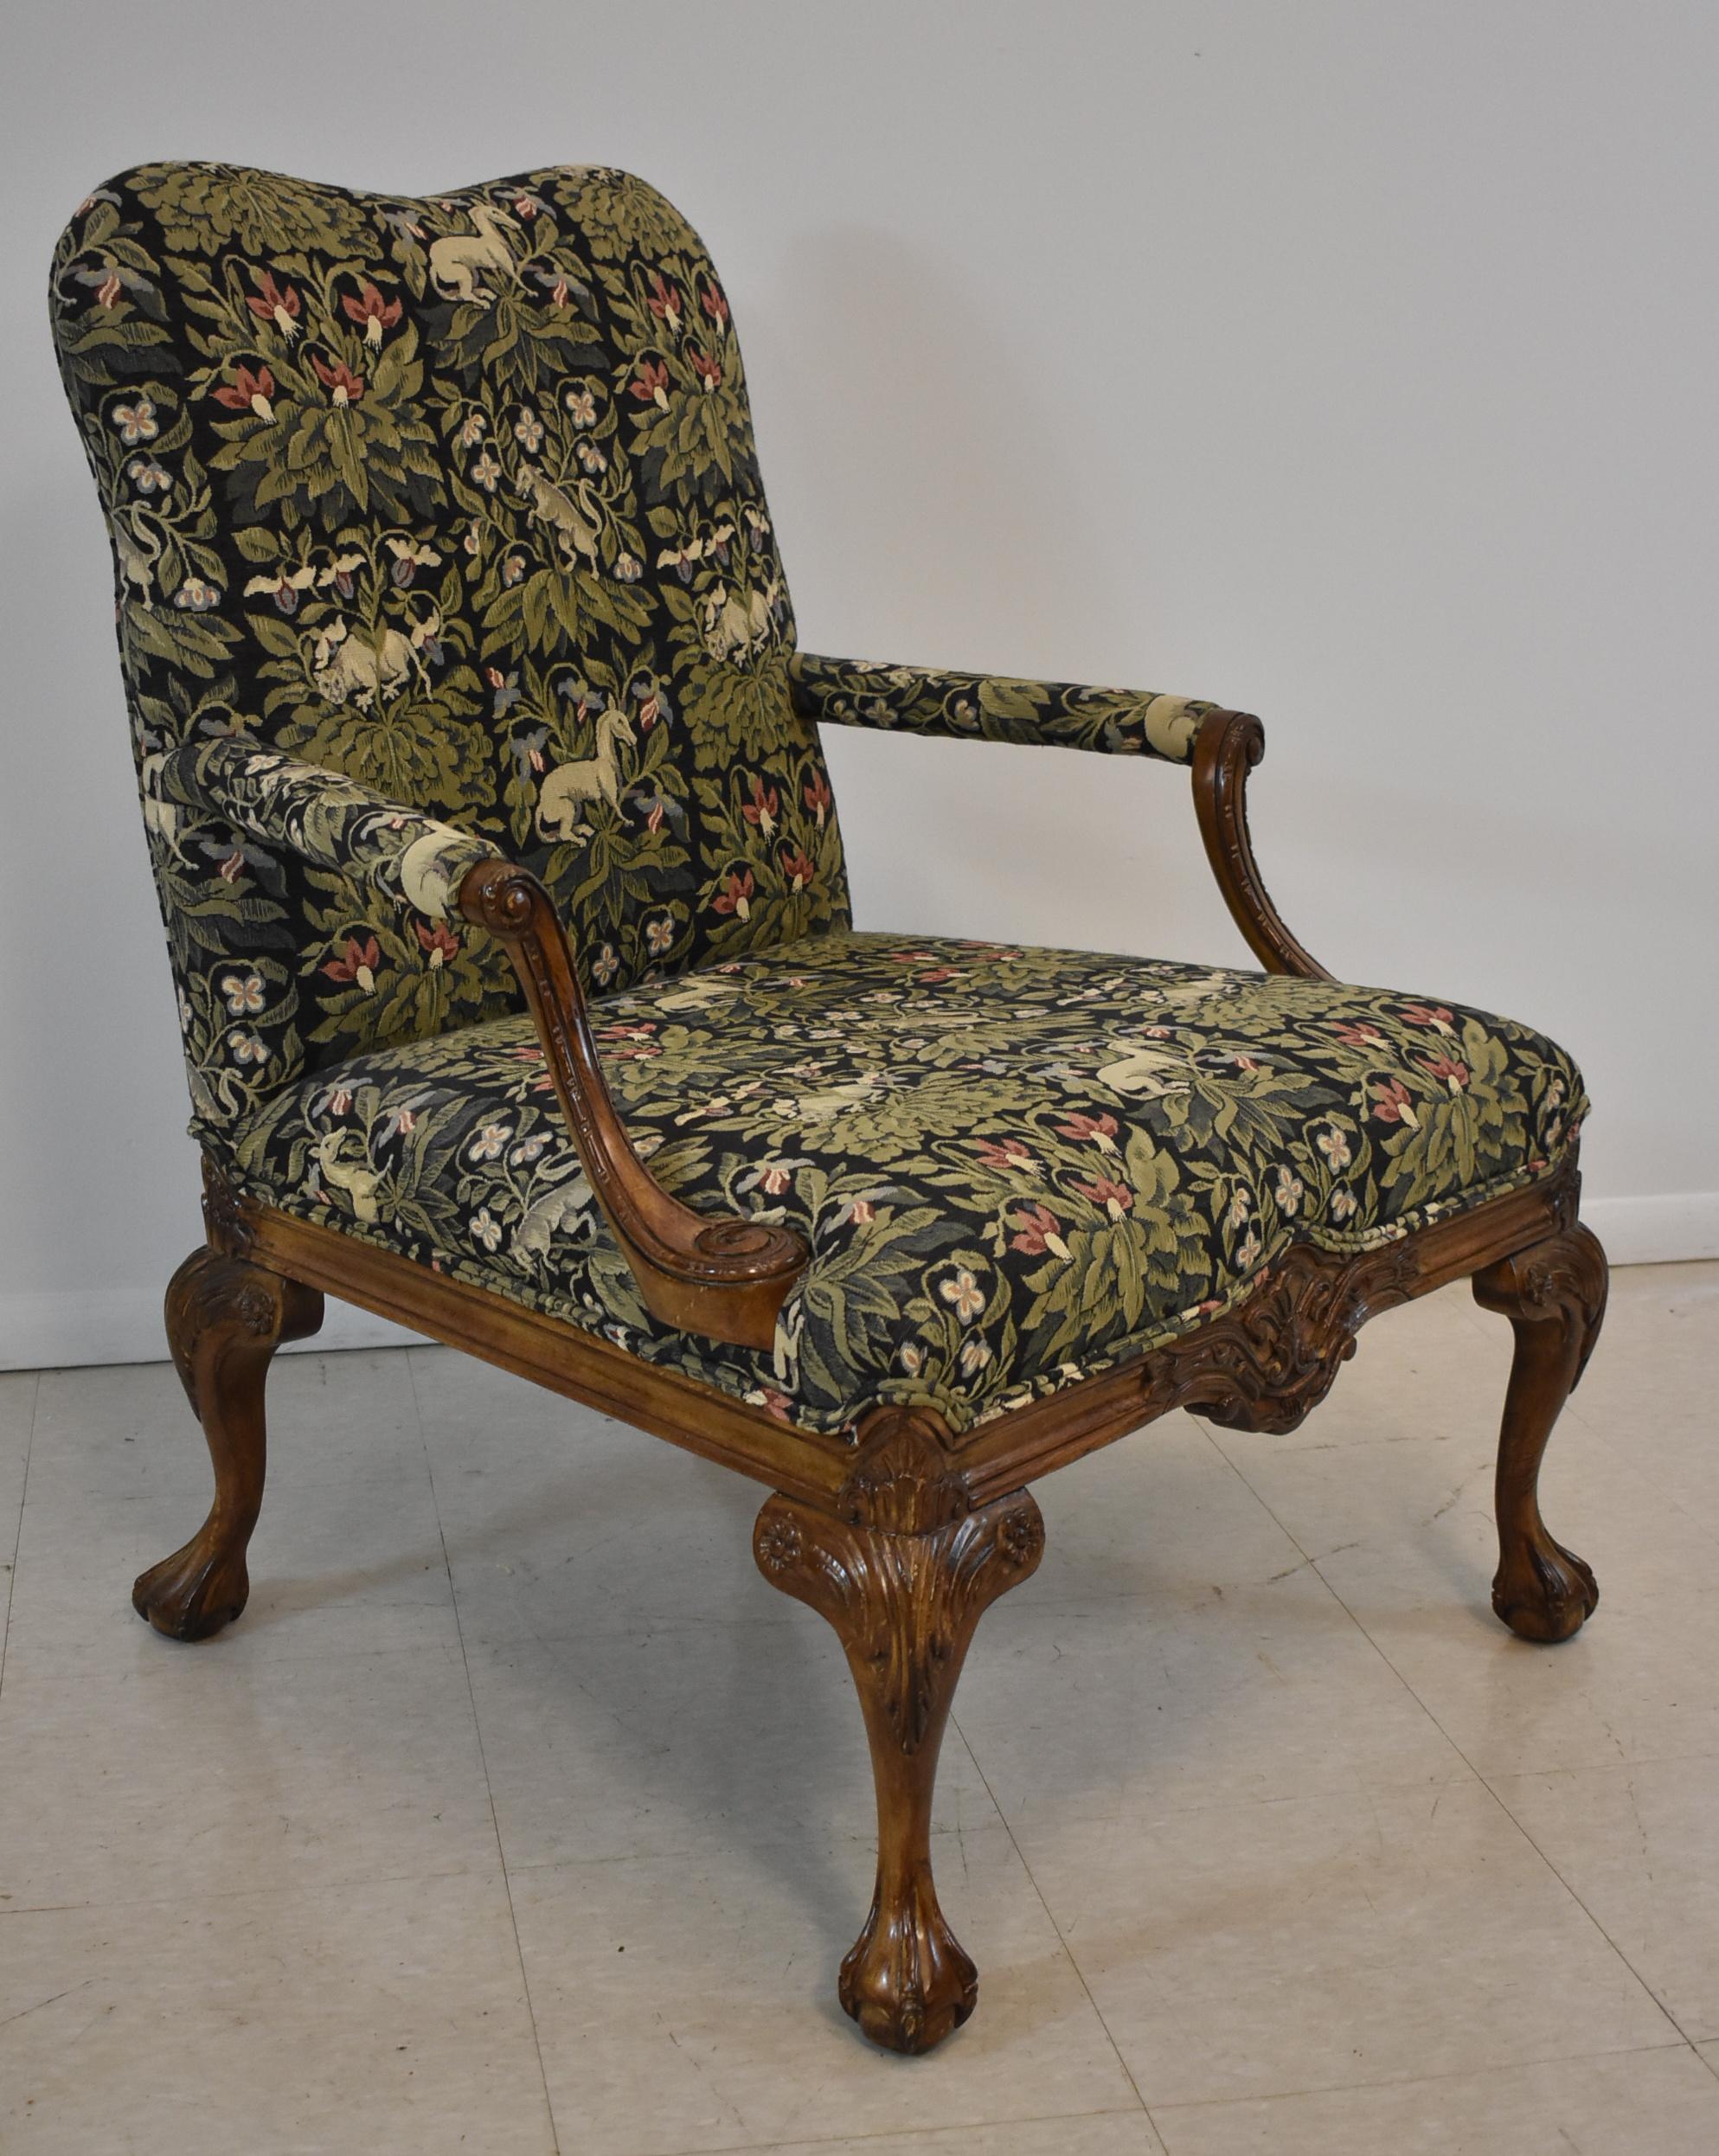 Chaise d'appoint sculptée de style italien par Sherrill Furniture Company. Pieds chippendale avec pieds en boule et griffes. Tissu de tapisserie noir et vert avec des animaux dans le feuillage.